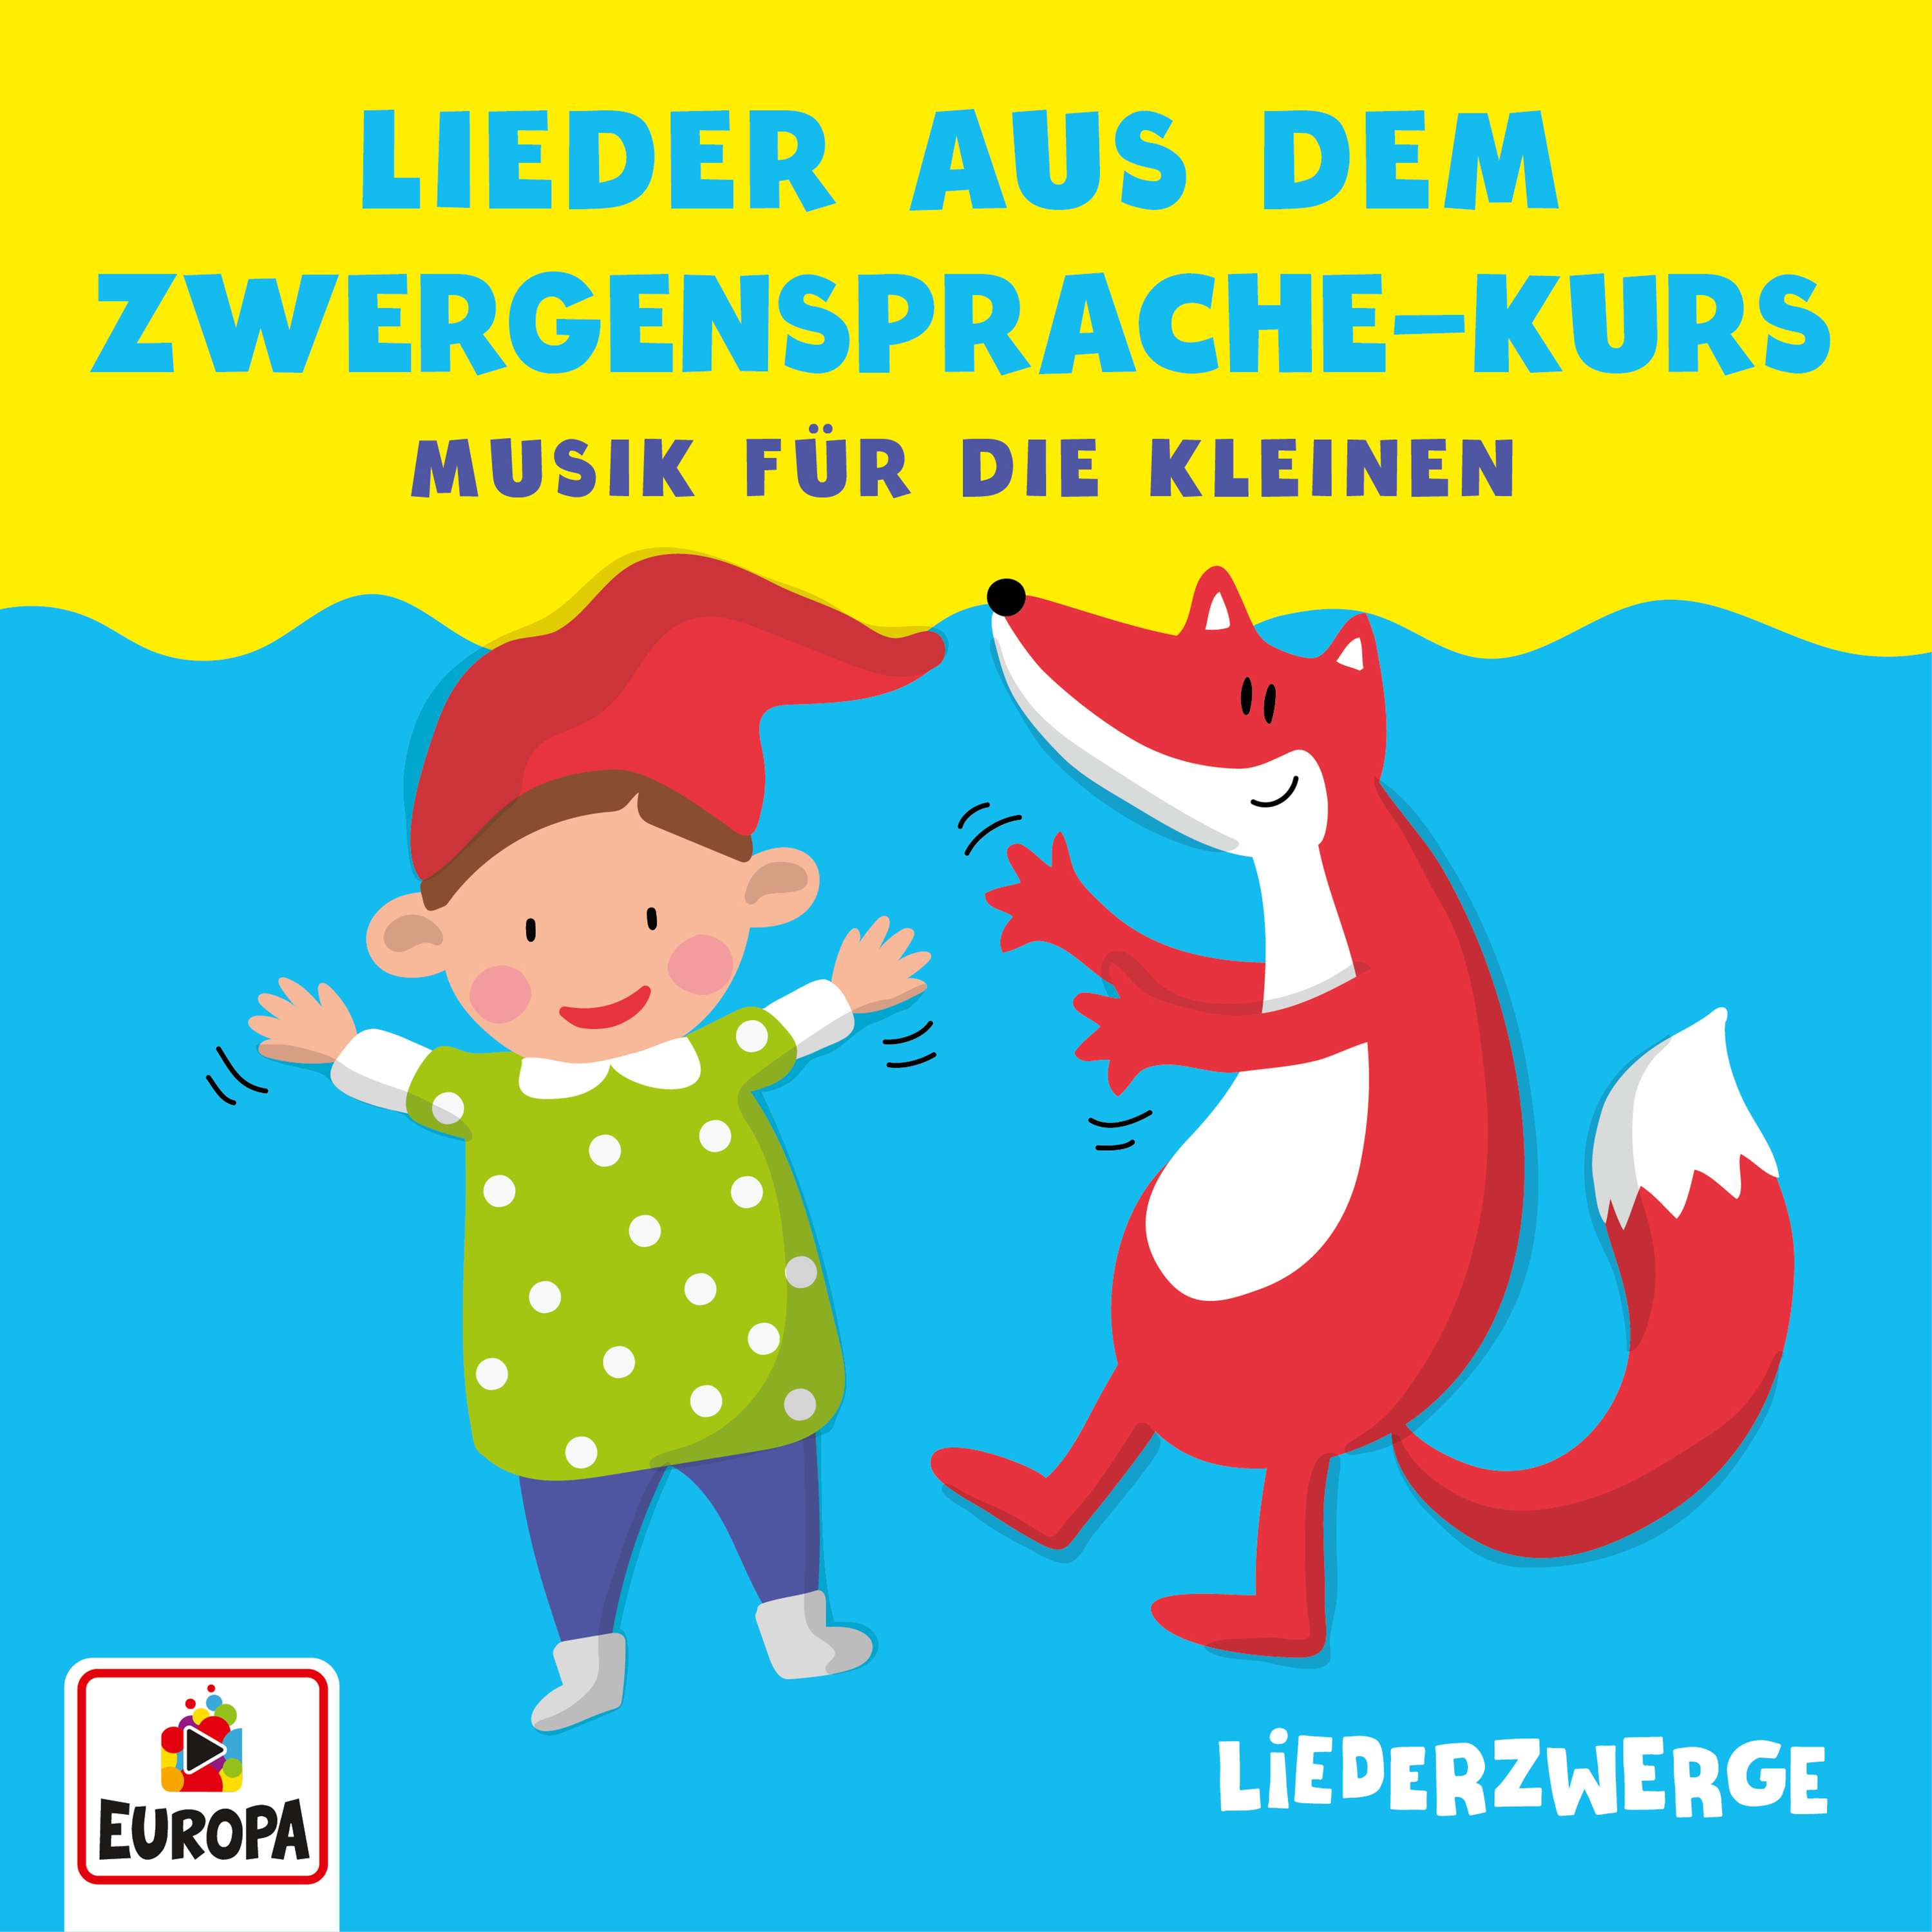 Lena, Felix & die Kita-Kids: Liederzwerge - Lieder aus dem Zwergensprache-Kurs